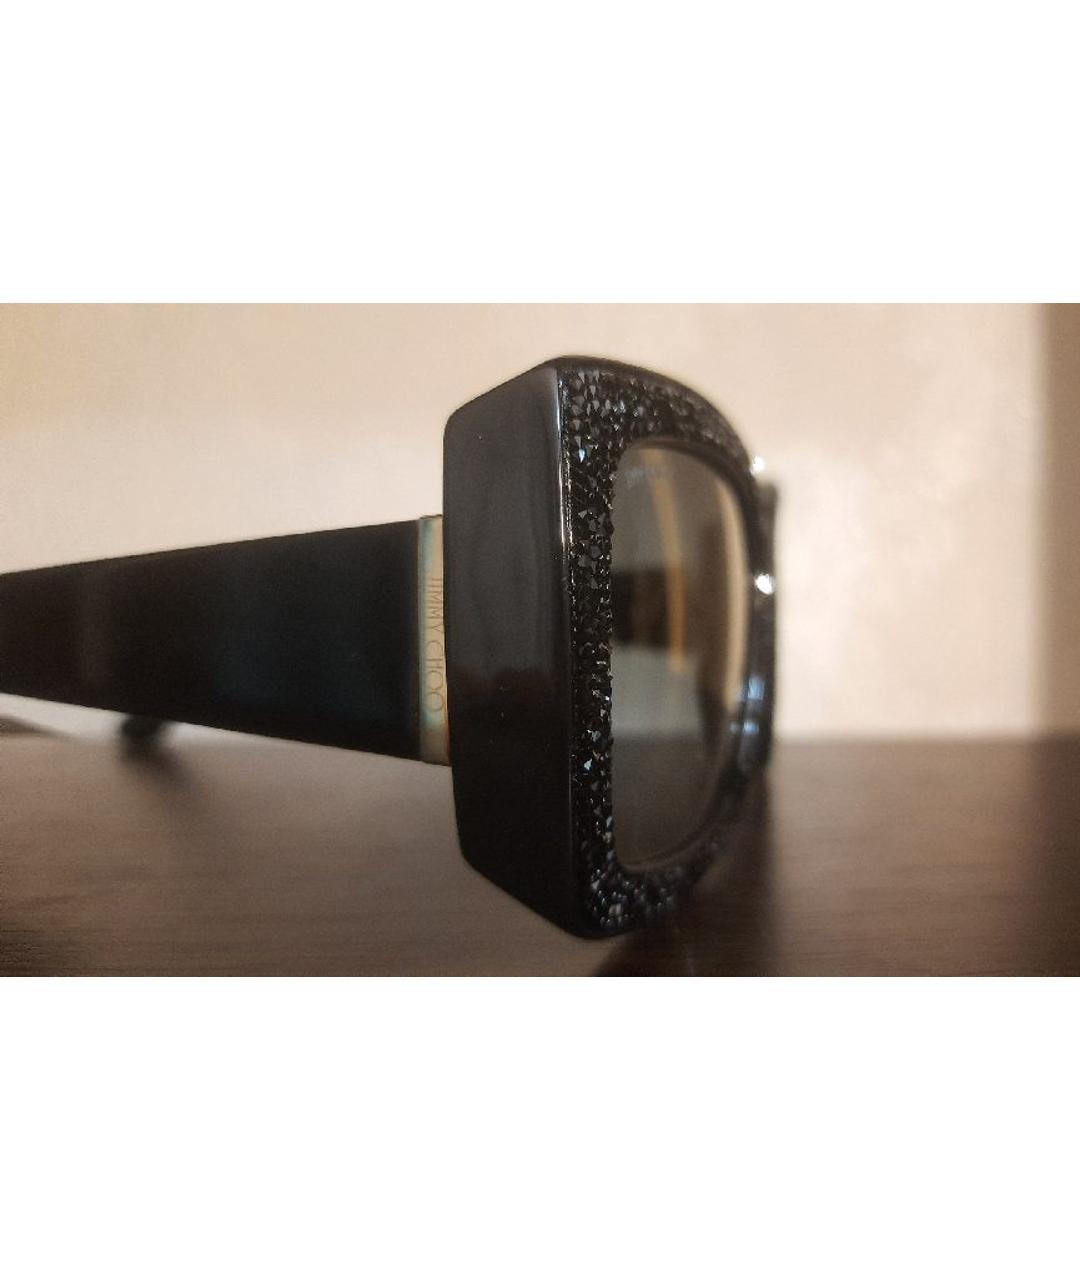 JIMMY CHOO Черные пластиковые солнцезащитные очки, фото 3